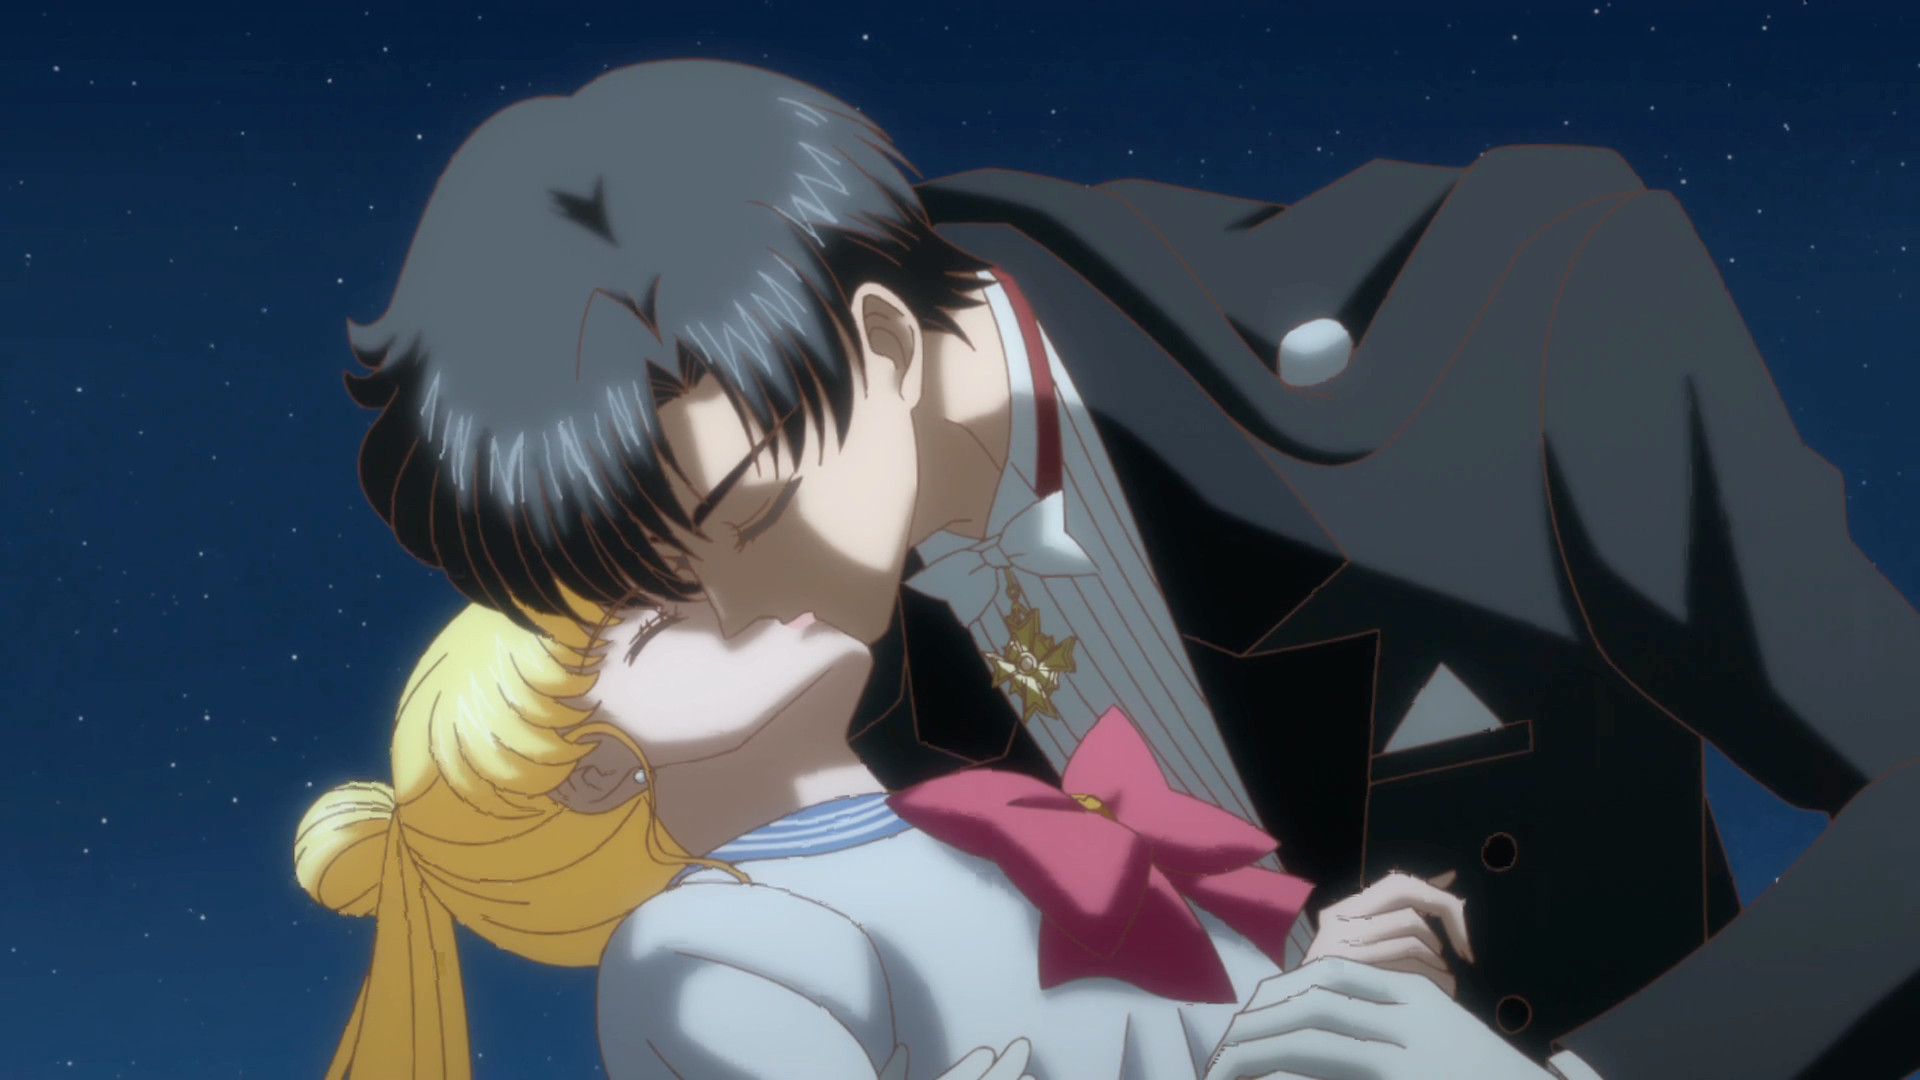 Sailor Moon Usagi And Mamoru Kiss , HD Wallpaper & Backgrounds